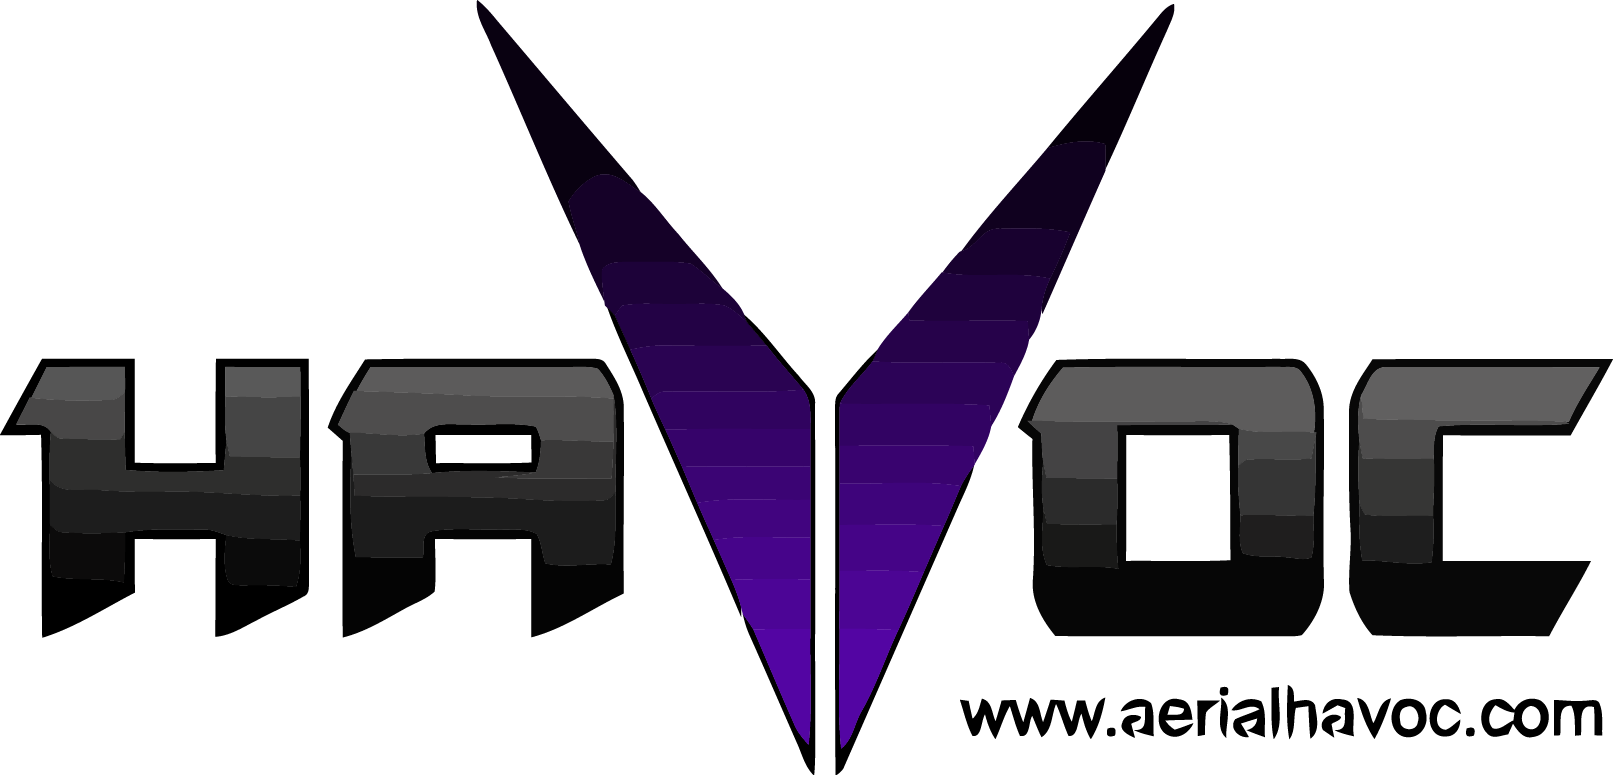 havoc_v_test_purple_171 [Converted].png